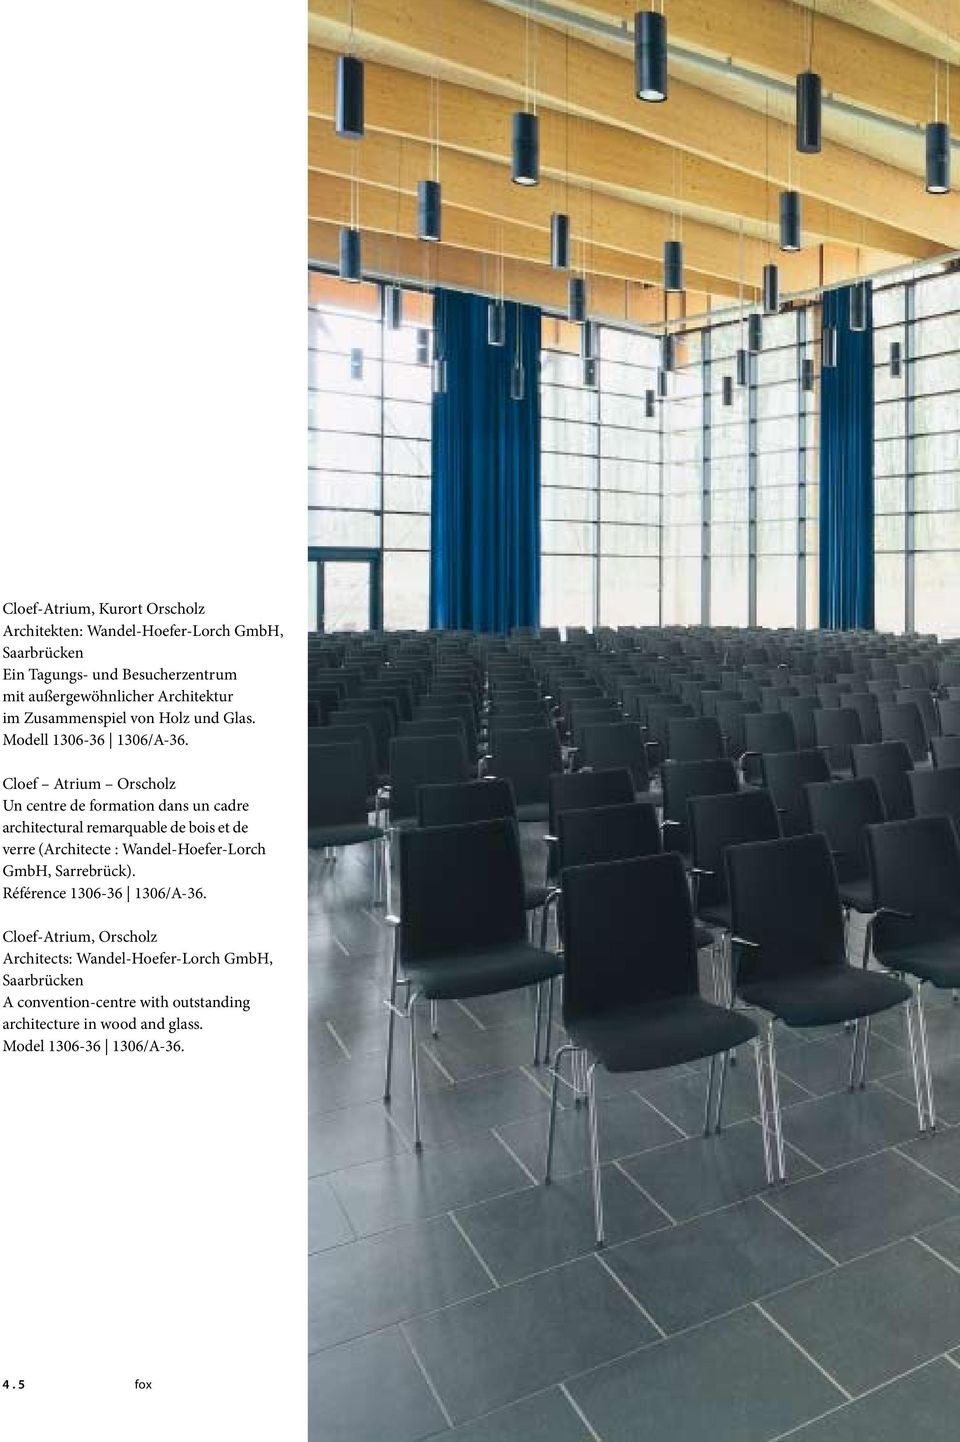 Cloef Atrium Orscholz Un centre de formation dans un cadre architectural remarquable de bois et de verre (Architecte : Wandel-Hoefer-Lorch